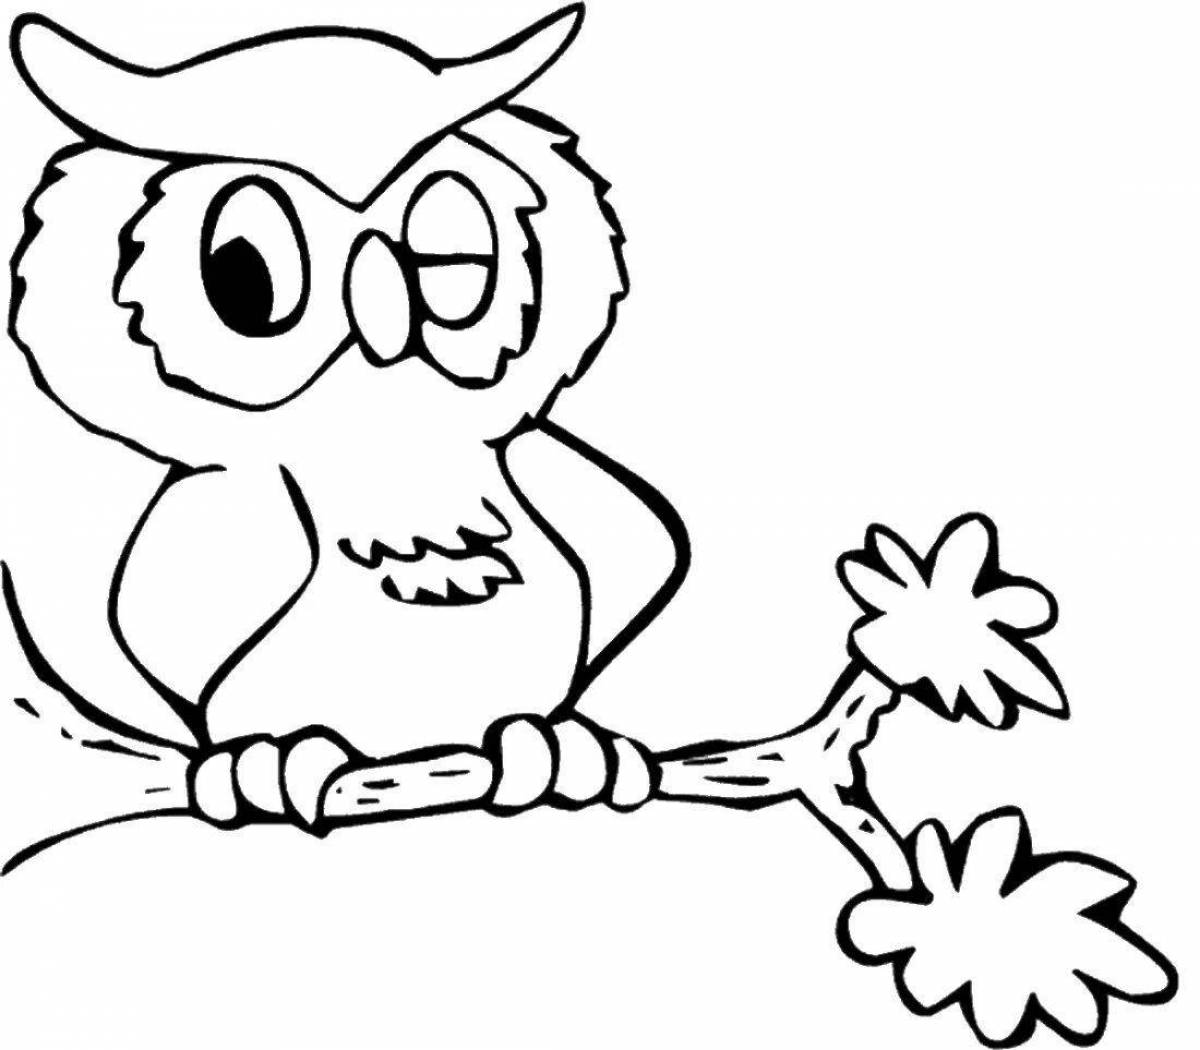 Coloring book humorous owl